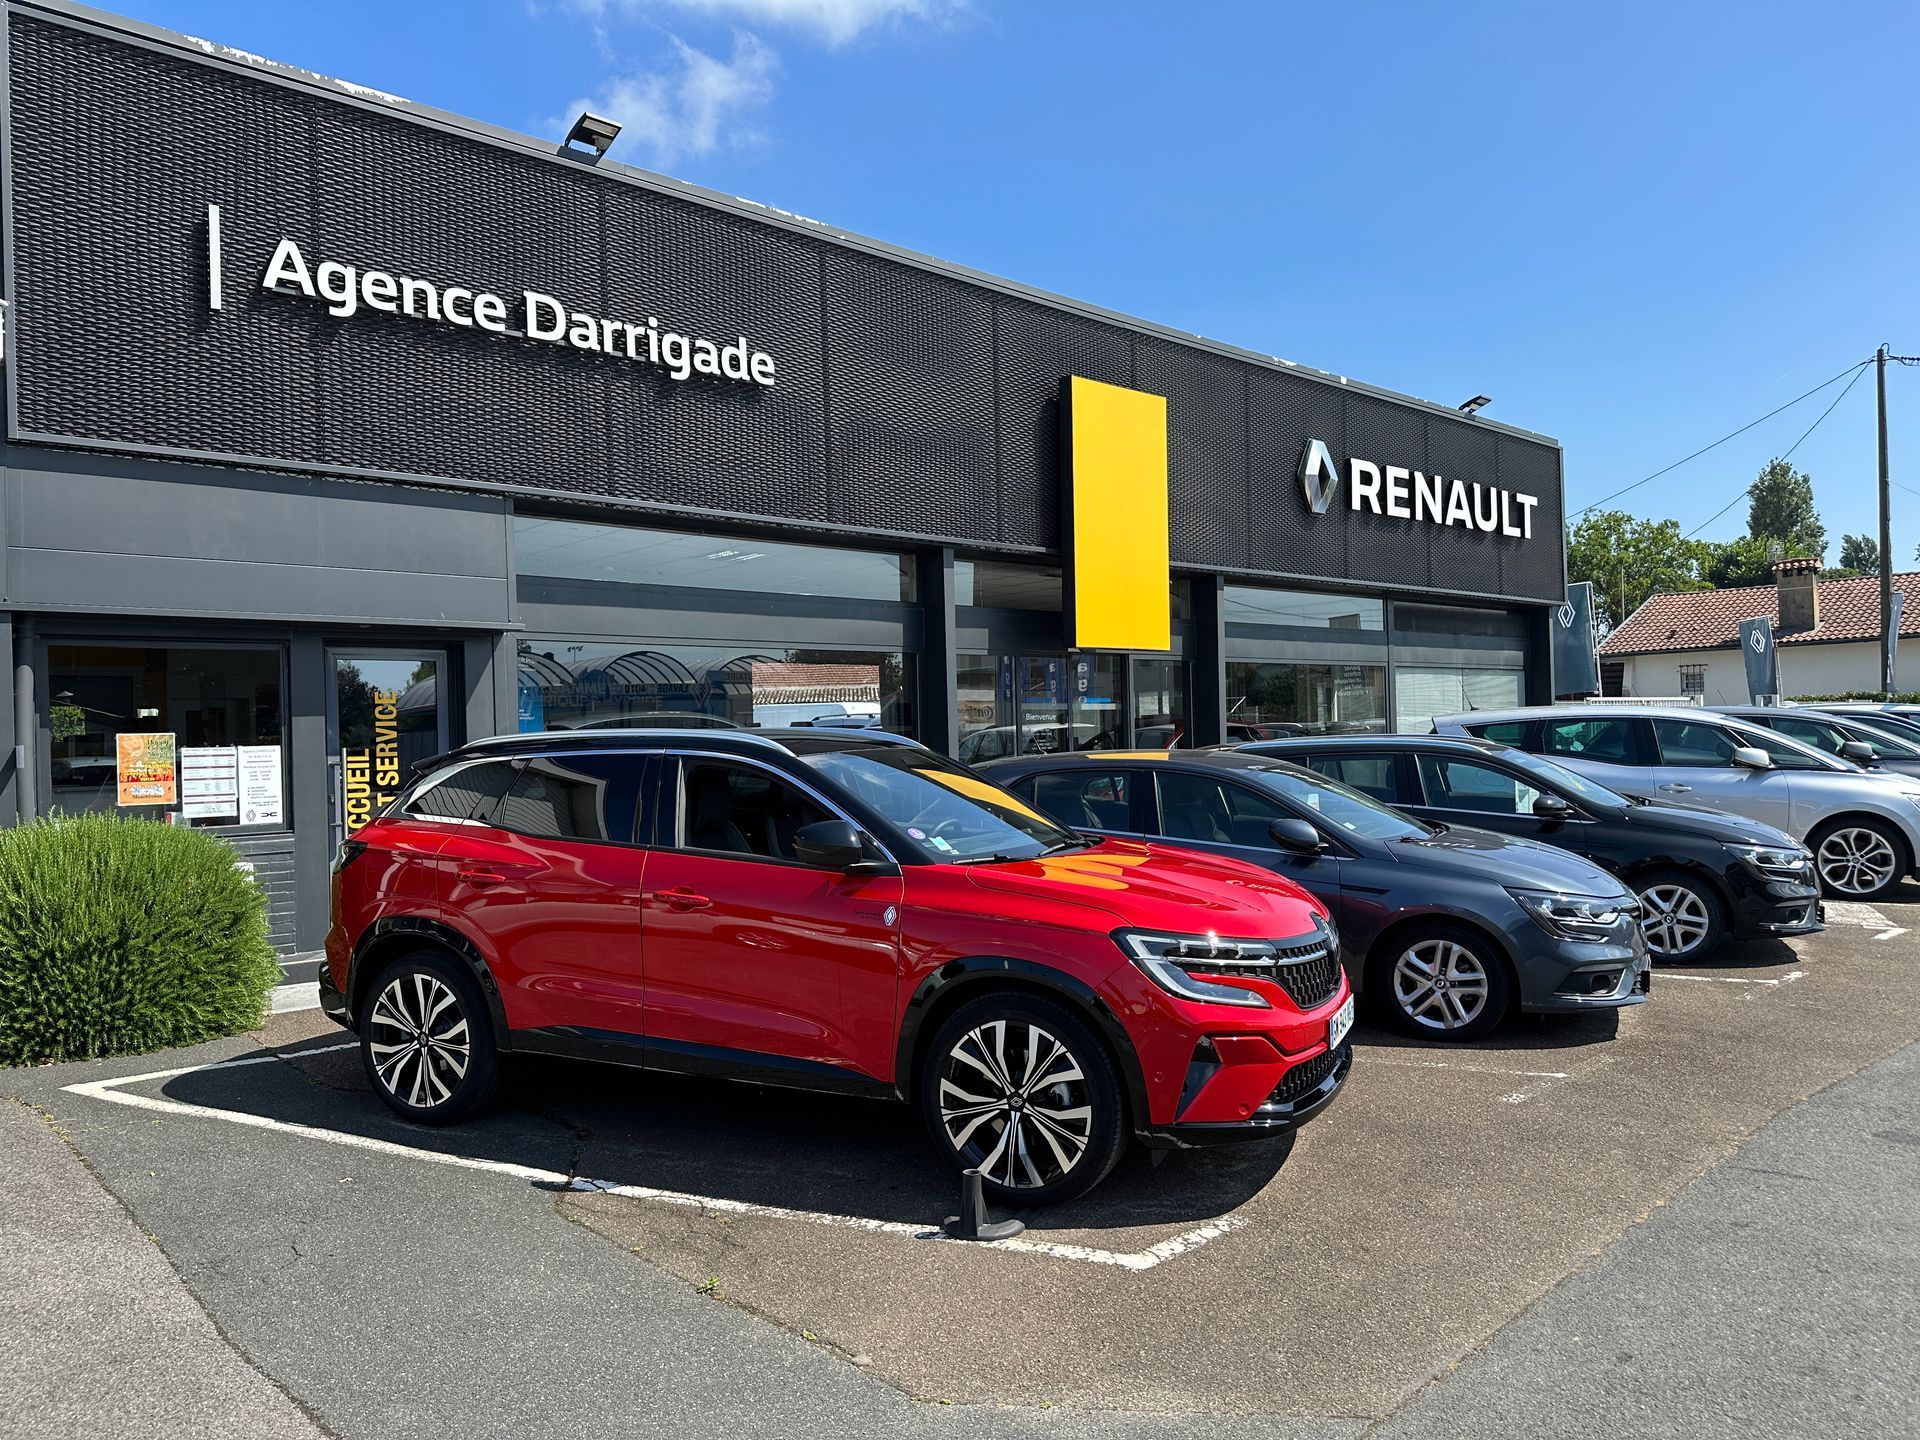 Devanture de l'agence DARRIGADE, voitures de la marque Renault en évidence à l'entrée